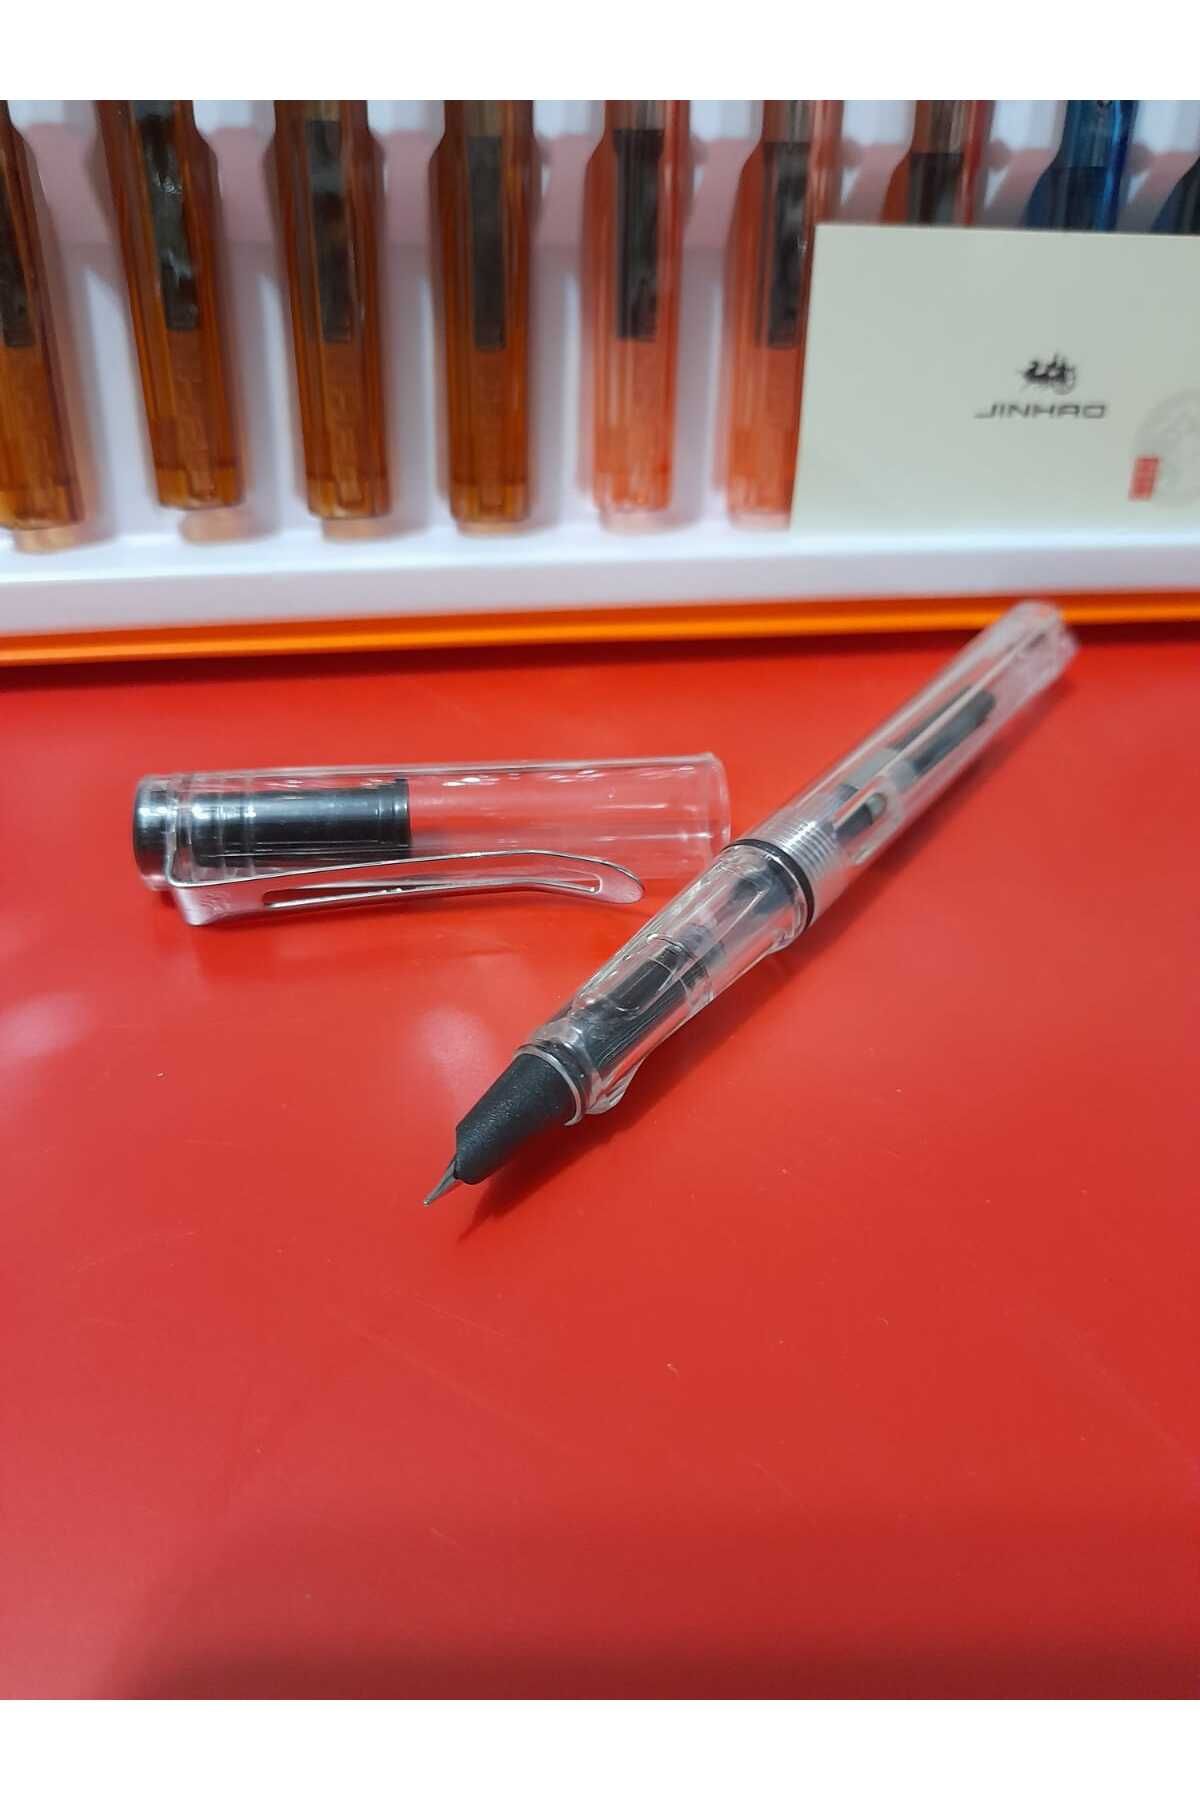 jinhao dolma kalem 0,38mm extra ince uç şeffaf gövde RENKSİZ,mürekkep ve kartuşla kullanılabilir